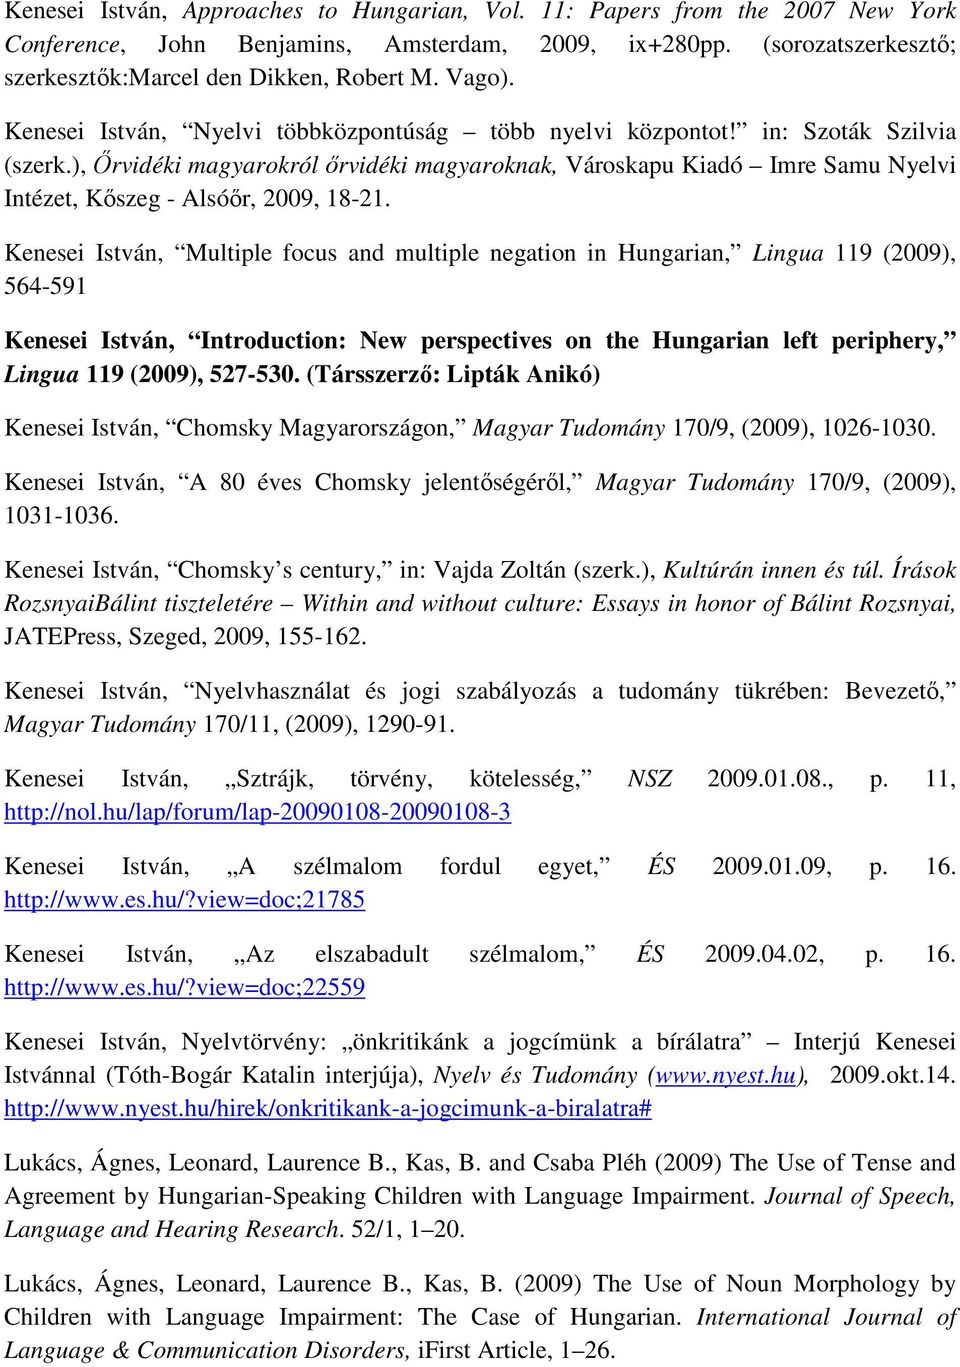 ), İrvidéki magyarokról ırvidéki magyaroknak, Városkapu Kiadó Imre Samu Nyelvi Intézet, Kıszeg - Alsóır, 2009, 18-21.